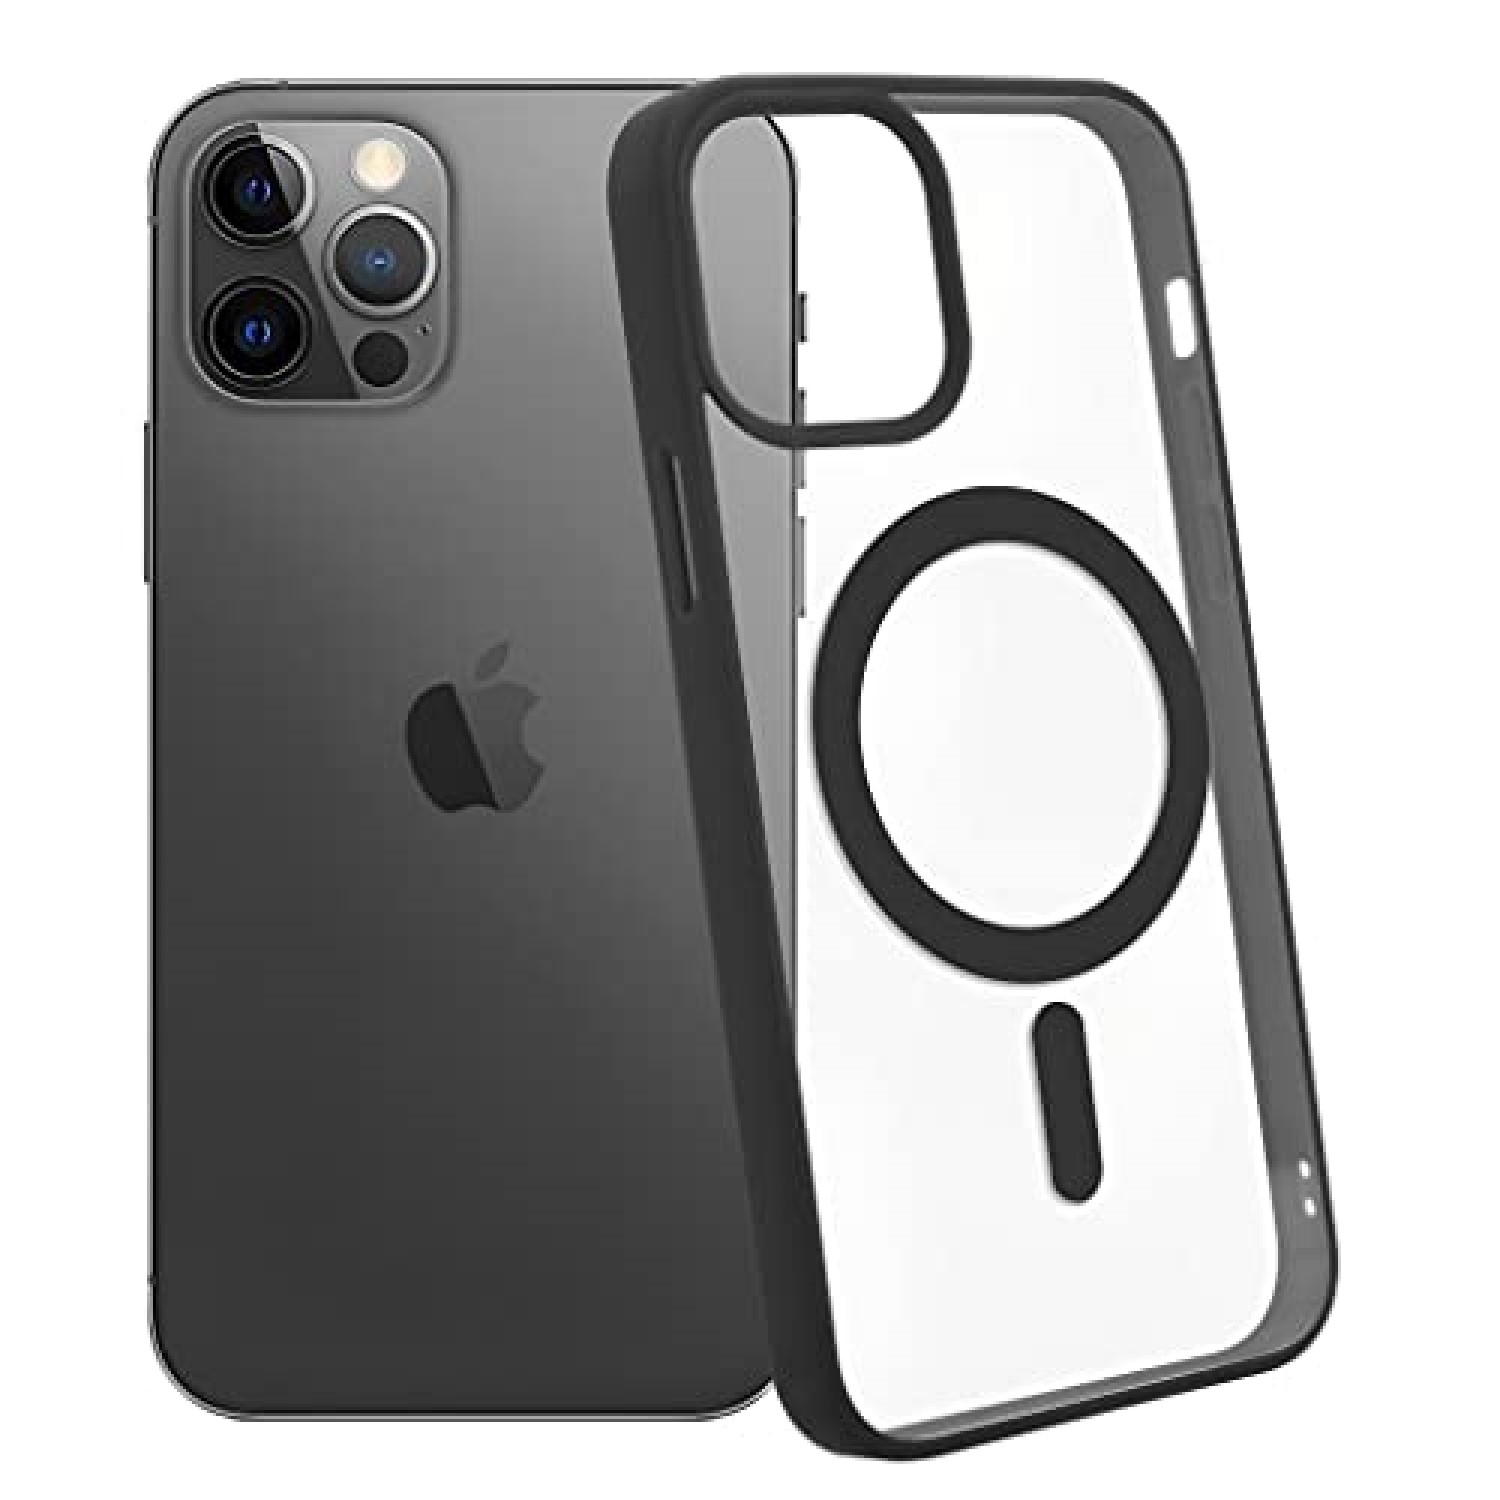 Funda magnética fuerte para iPhone 11 Pro Max, [compatible con MagSafe]  funda protectora a prueba de golpes para iPhone 11 Pro Max de 6.5 pulgadas